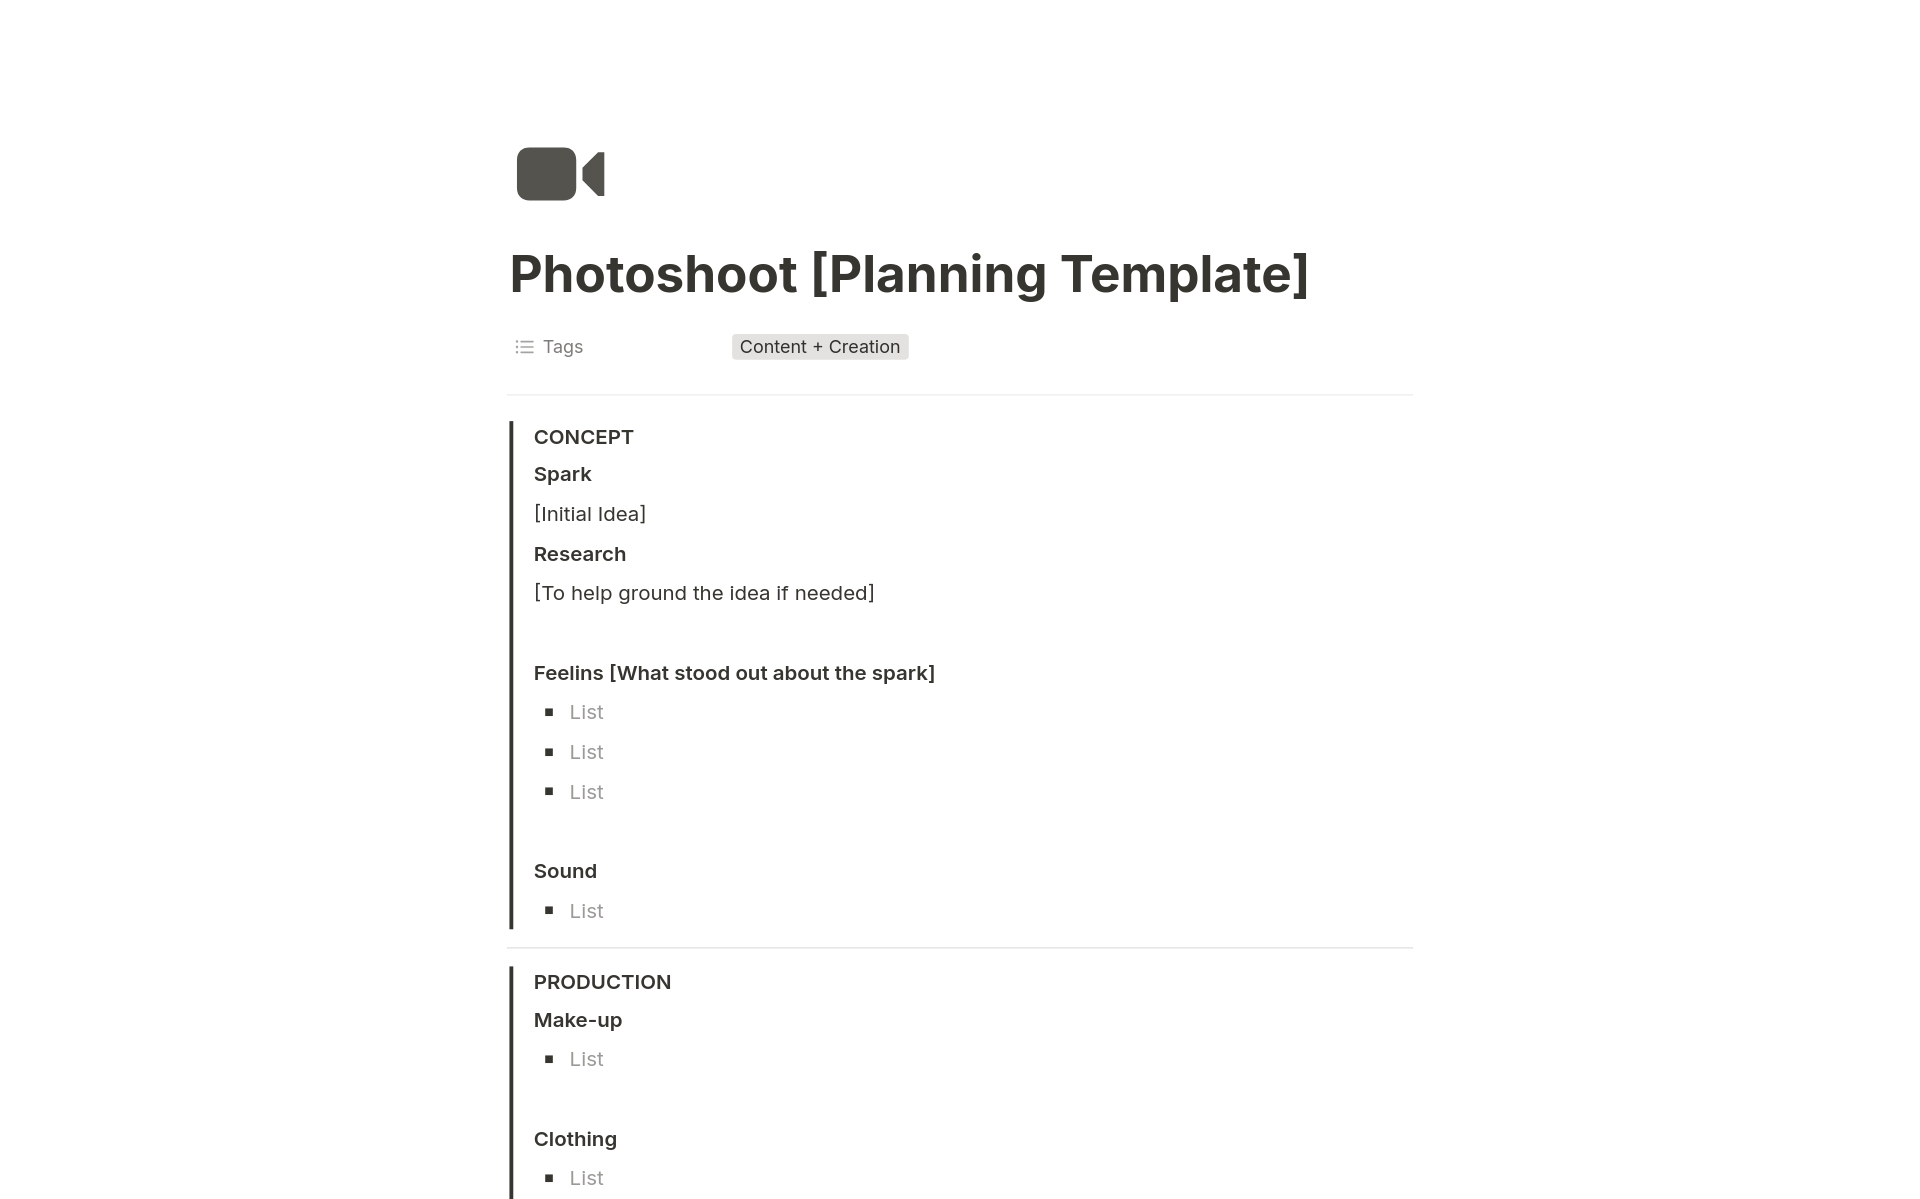 Uma prévia do modelo para Photoshoot Planning